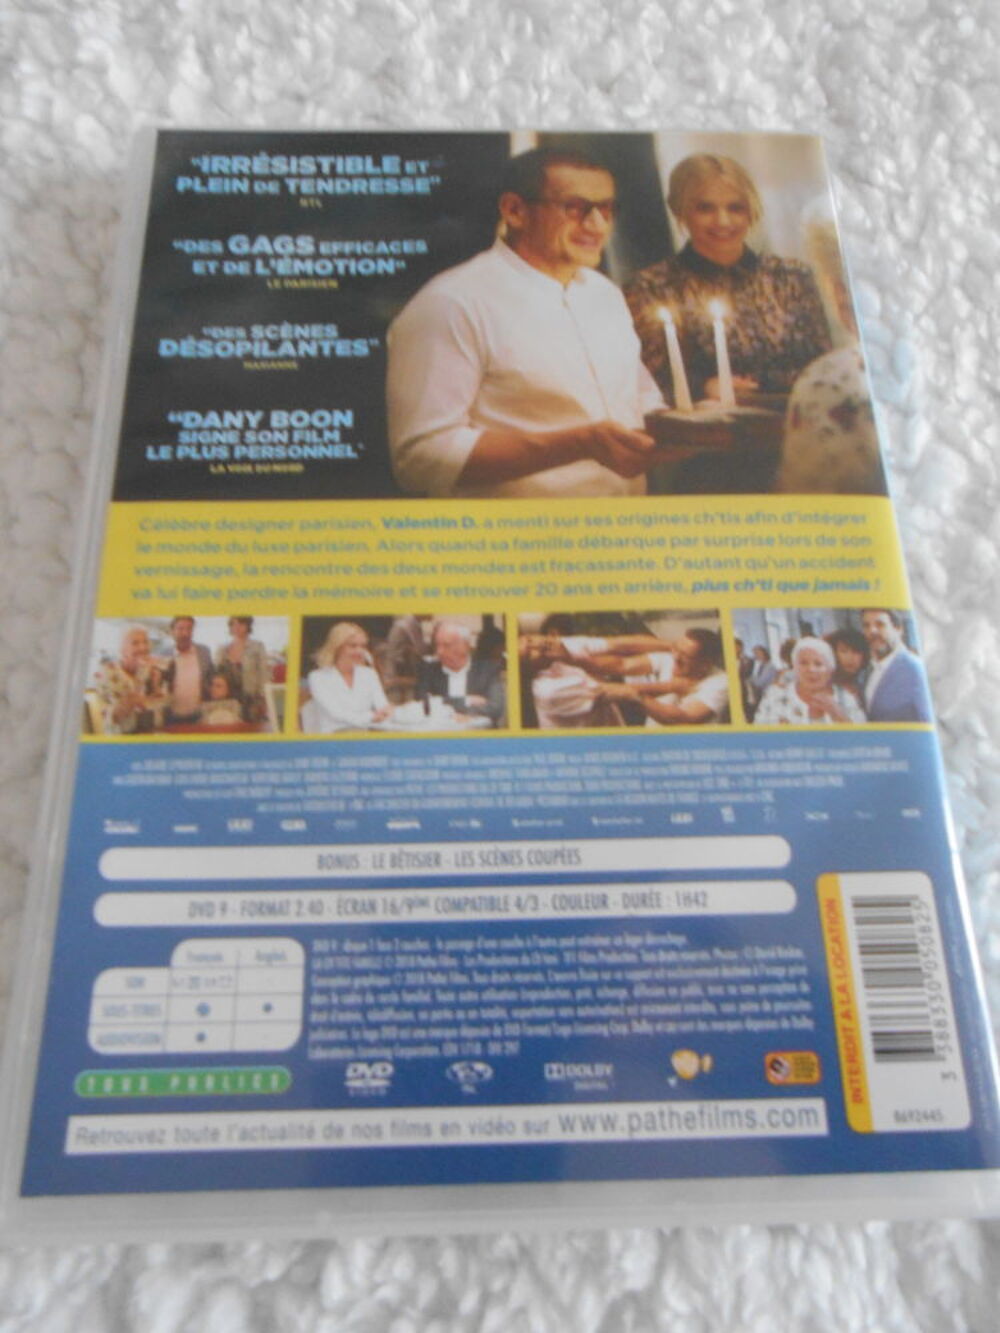 DVD FILM DVD et blu-ray